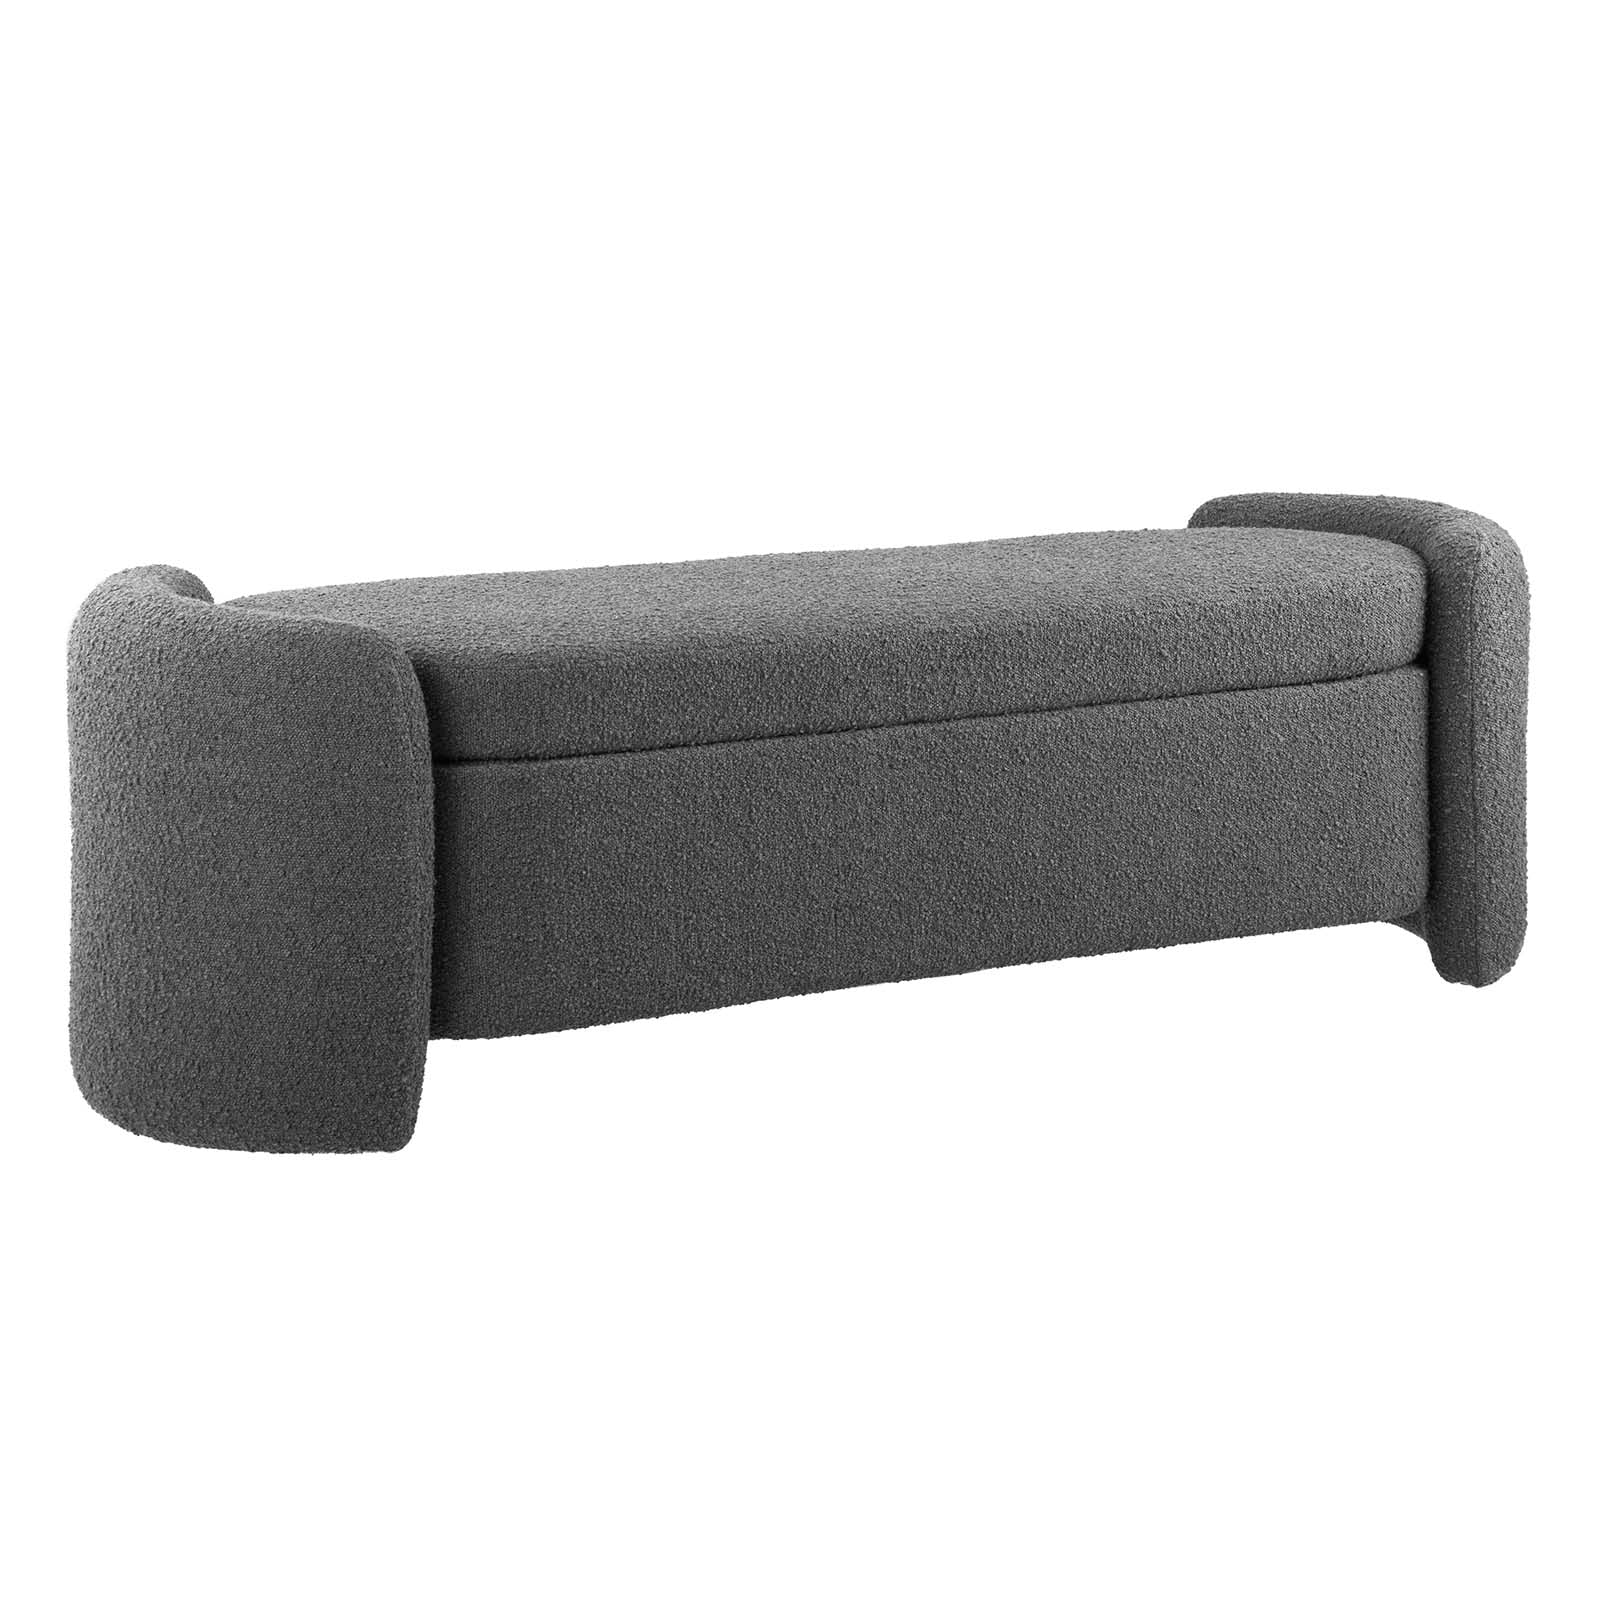 Nebula Boucle Upholstered Bench-Bench-Modway-Wall2Wall Furnishings